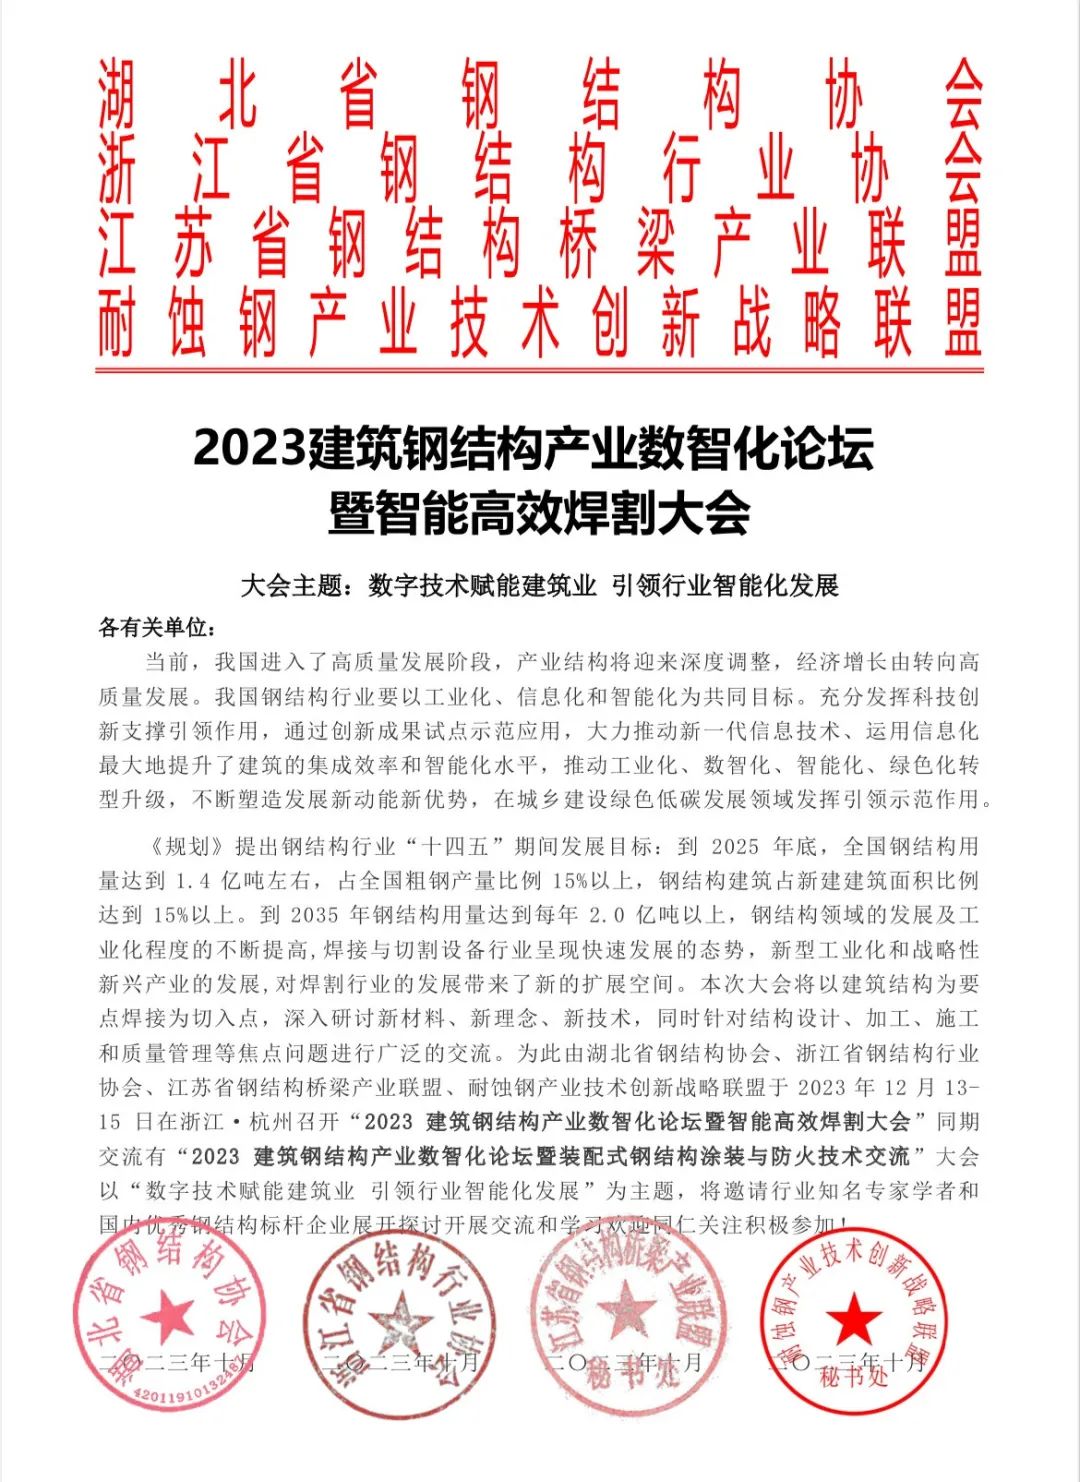 12月13-15日 · 杭州 | 2023建筑钢结构产业数智化论坛